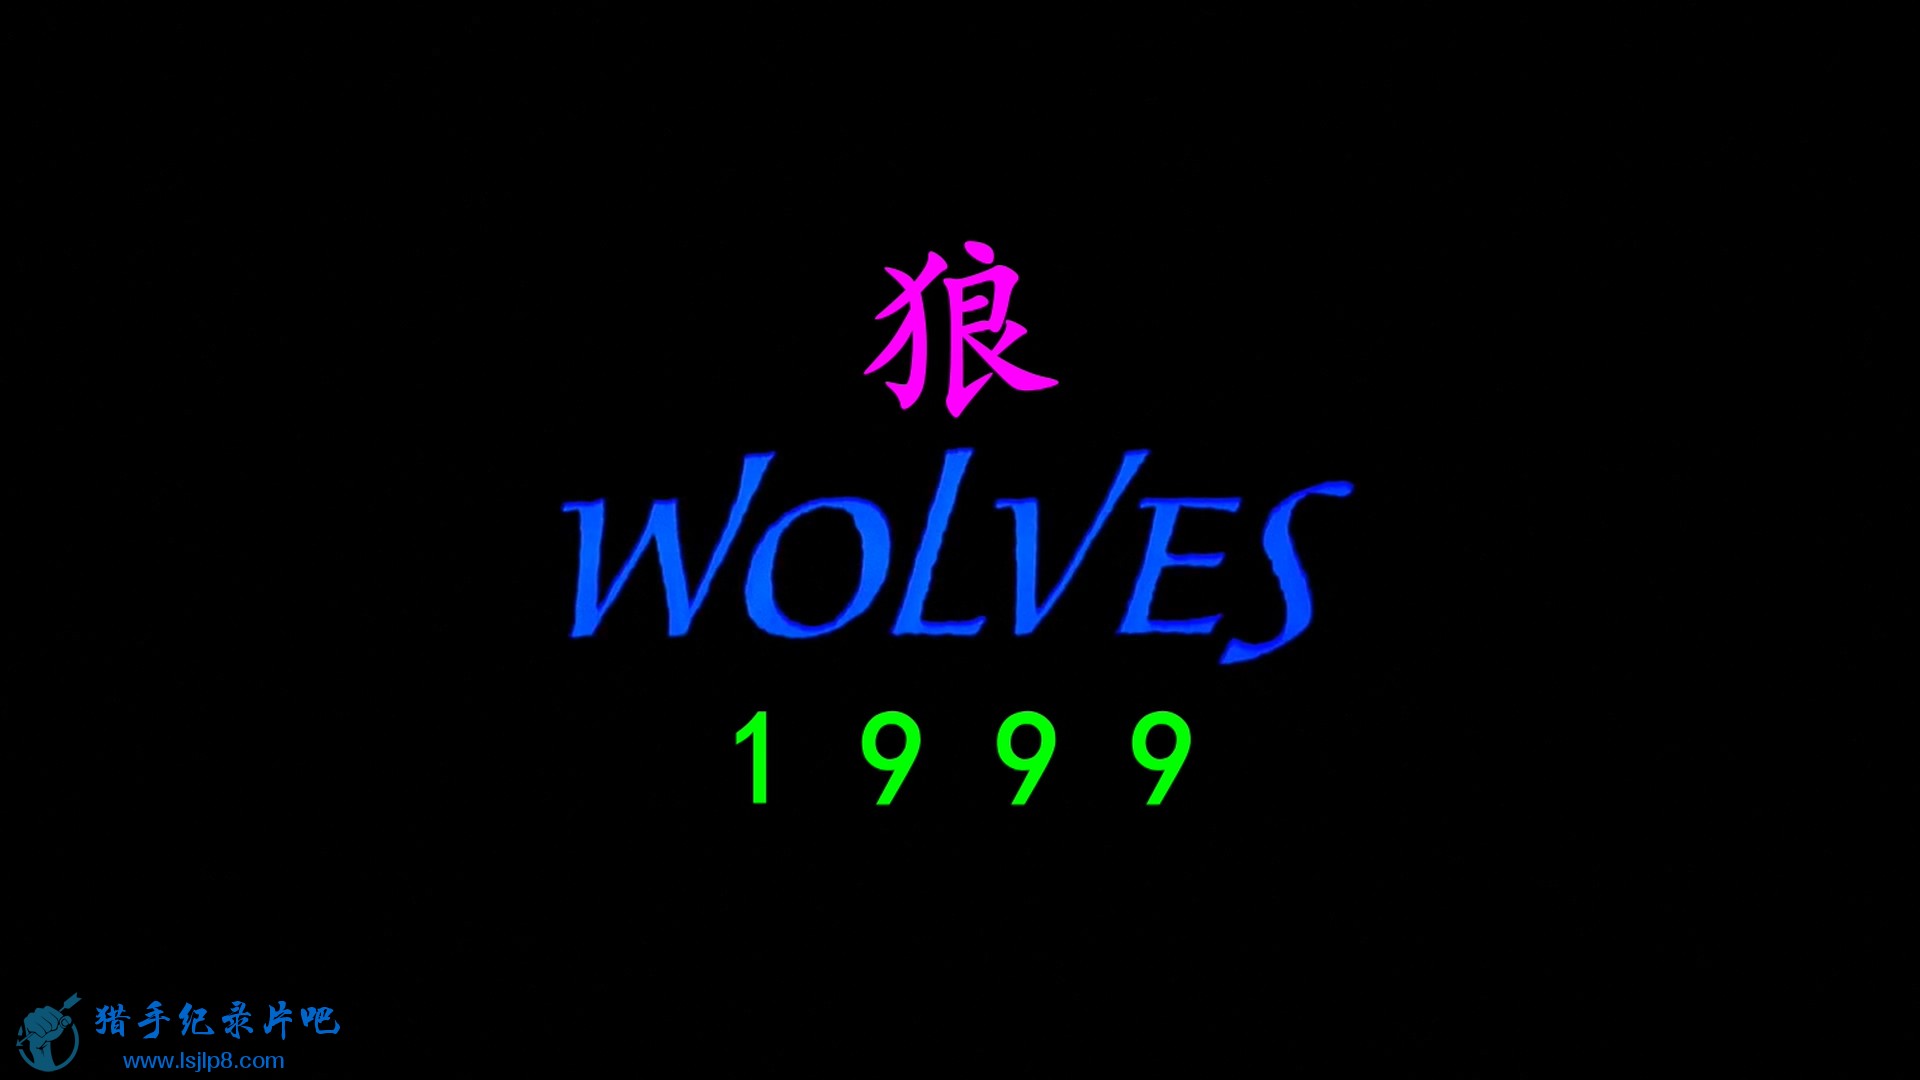 IMAX - Wolves.2001.1080p.BluRay.x264-CtrlHD.mkv_20200626_191002.096.jpg